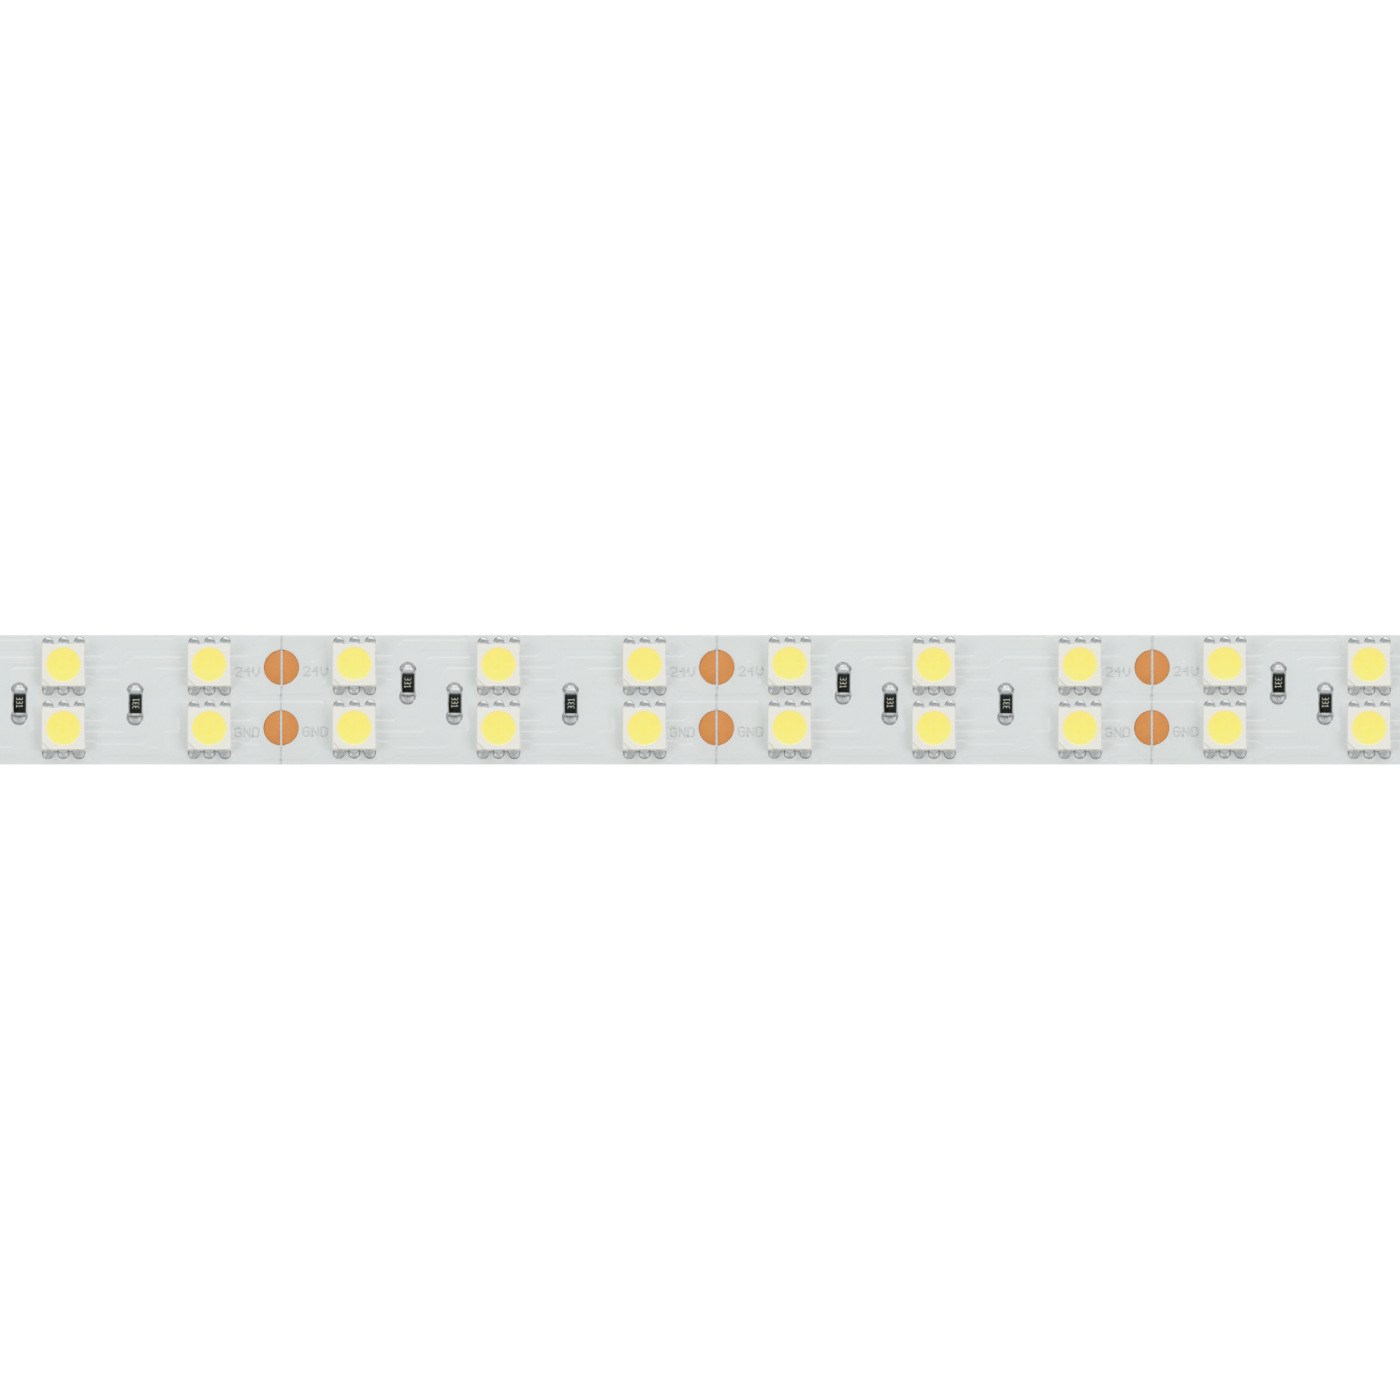 Светодиодная лента RT 2-5000 24V Cool 8K 2x2 (5060, 600 LED, LUX) (Arlight, 28.8 Вт/м, IP20) светодиодная лента rtw 2 5000pgs 24v yellow 2x 5060 300 led lux arlight 14 4 вт м ip67